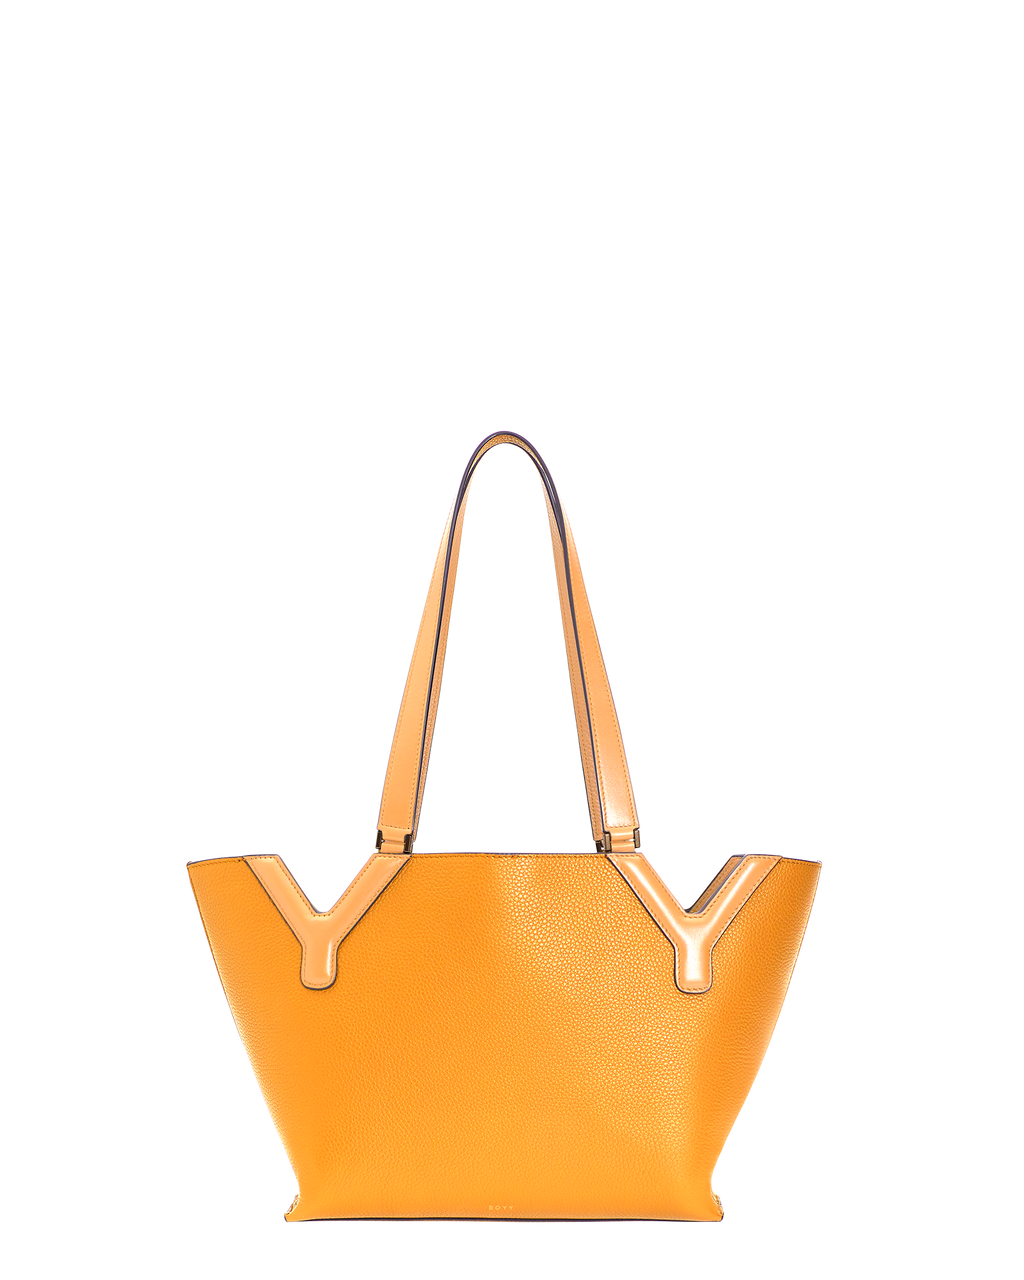 Hot Sale Ladies Handbag Luxury Designer Bag Replica Handbags Louis Tote Top  Messenger Bag - China Bag and Handbags price